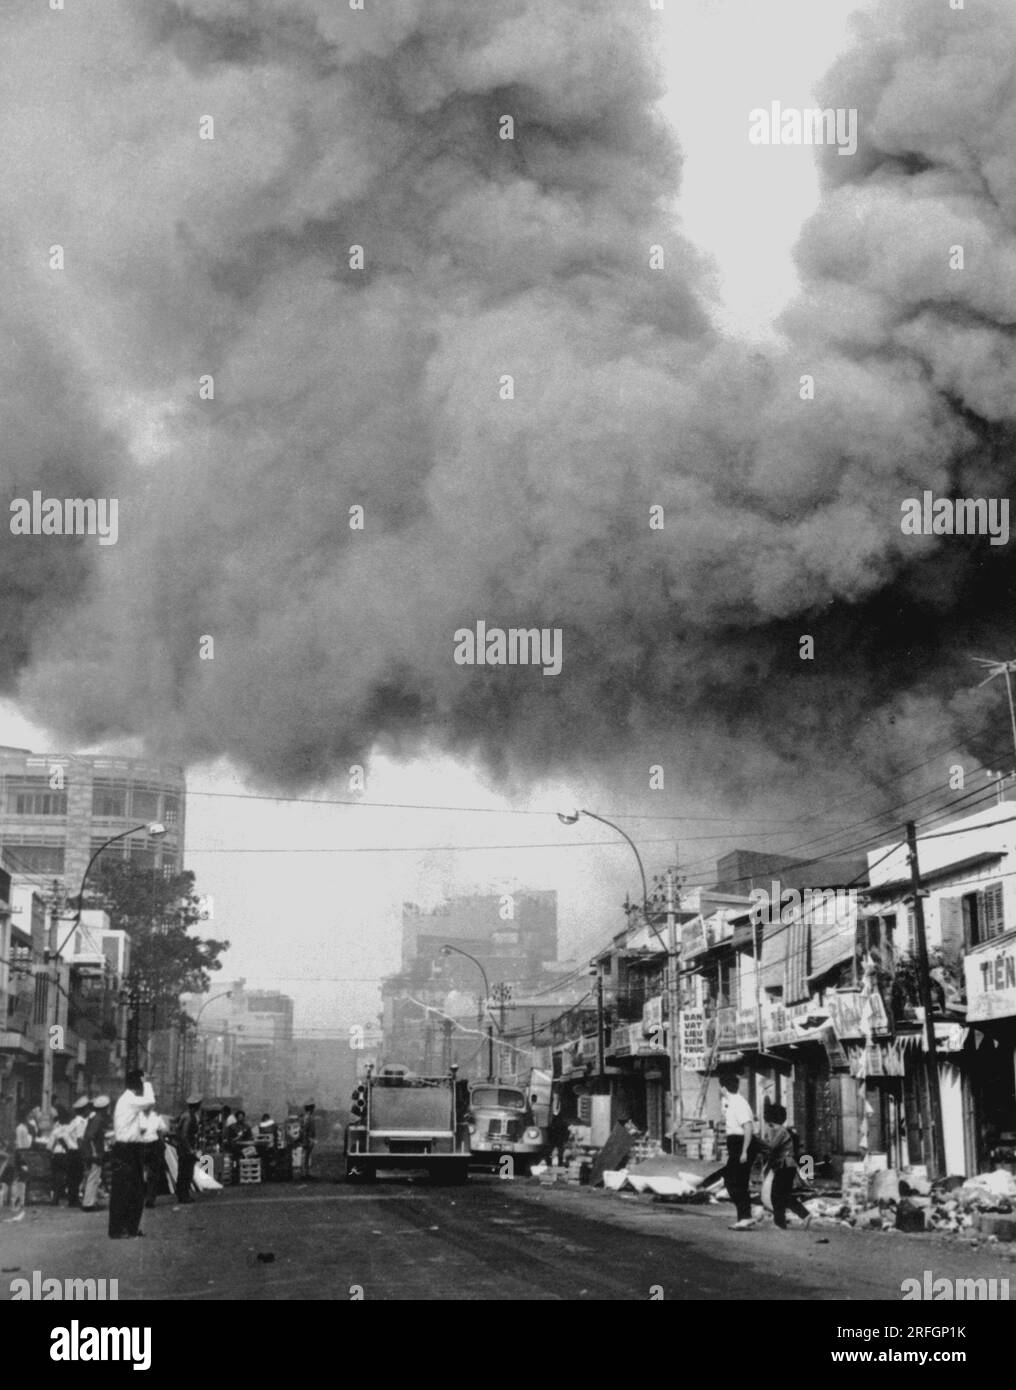 SAIGON, VIETNAM - circa 31 gennaio 1968 - il fumo nero copre le aree della capitale e i camion dei pompieri si precipitano sulle scene degli incendi scoppiati durante gli attacchi Foto Stock